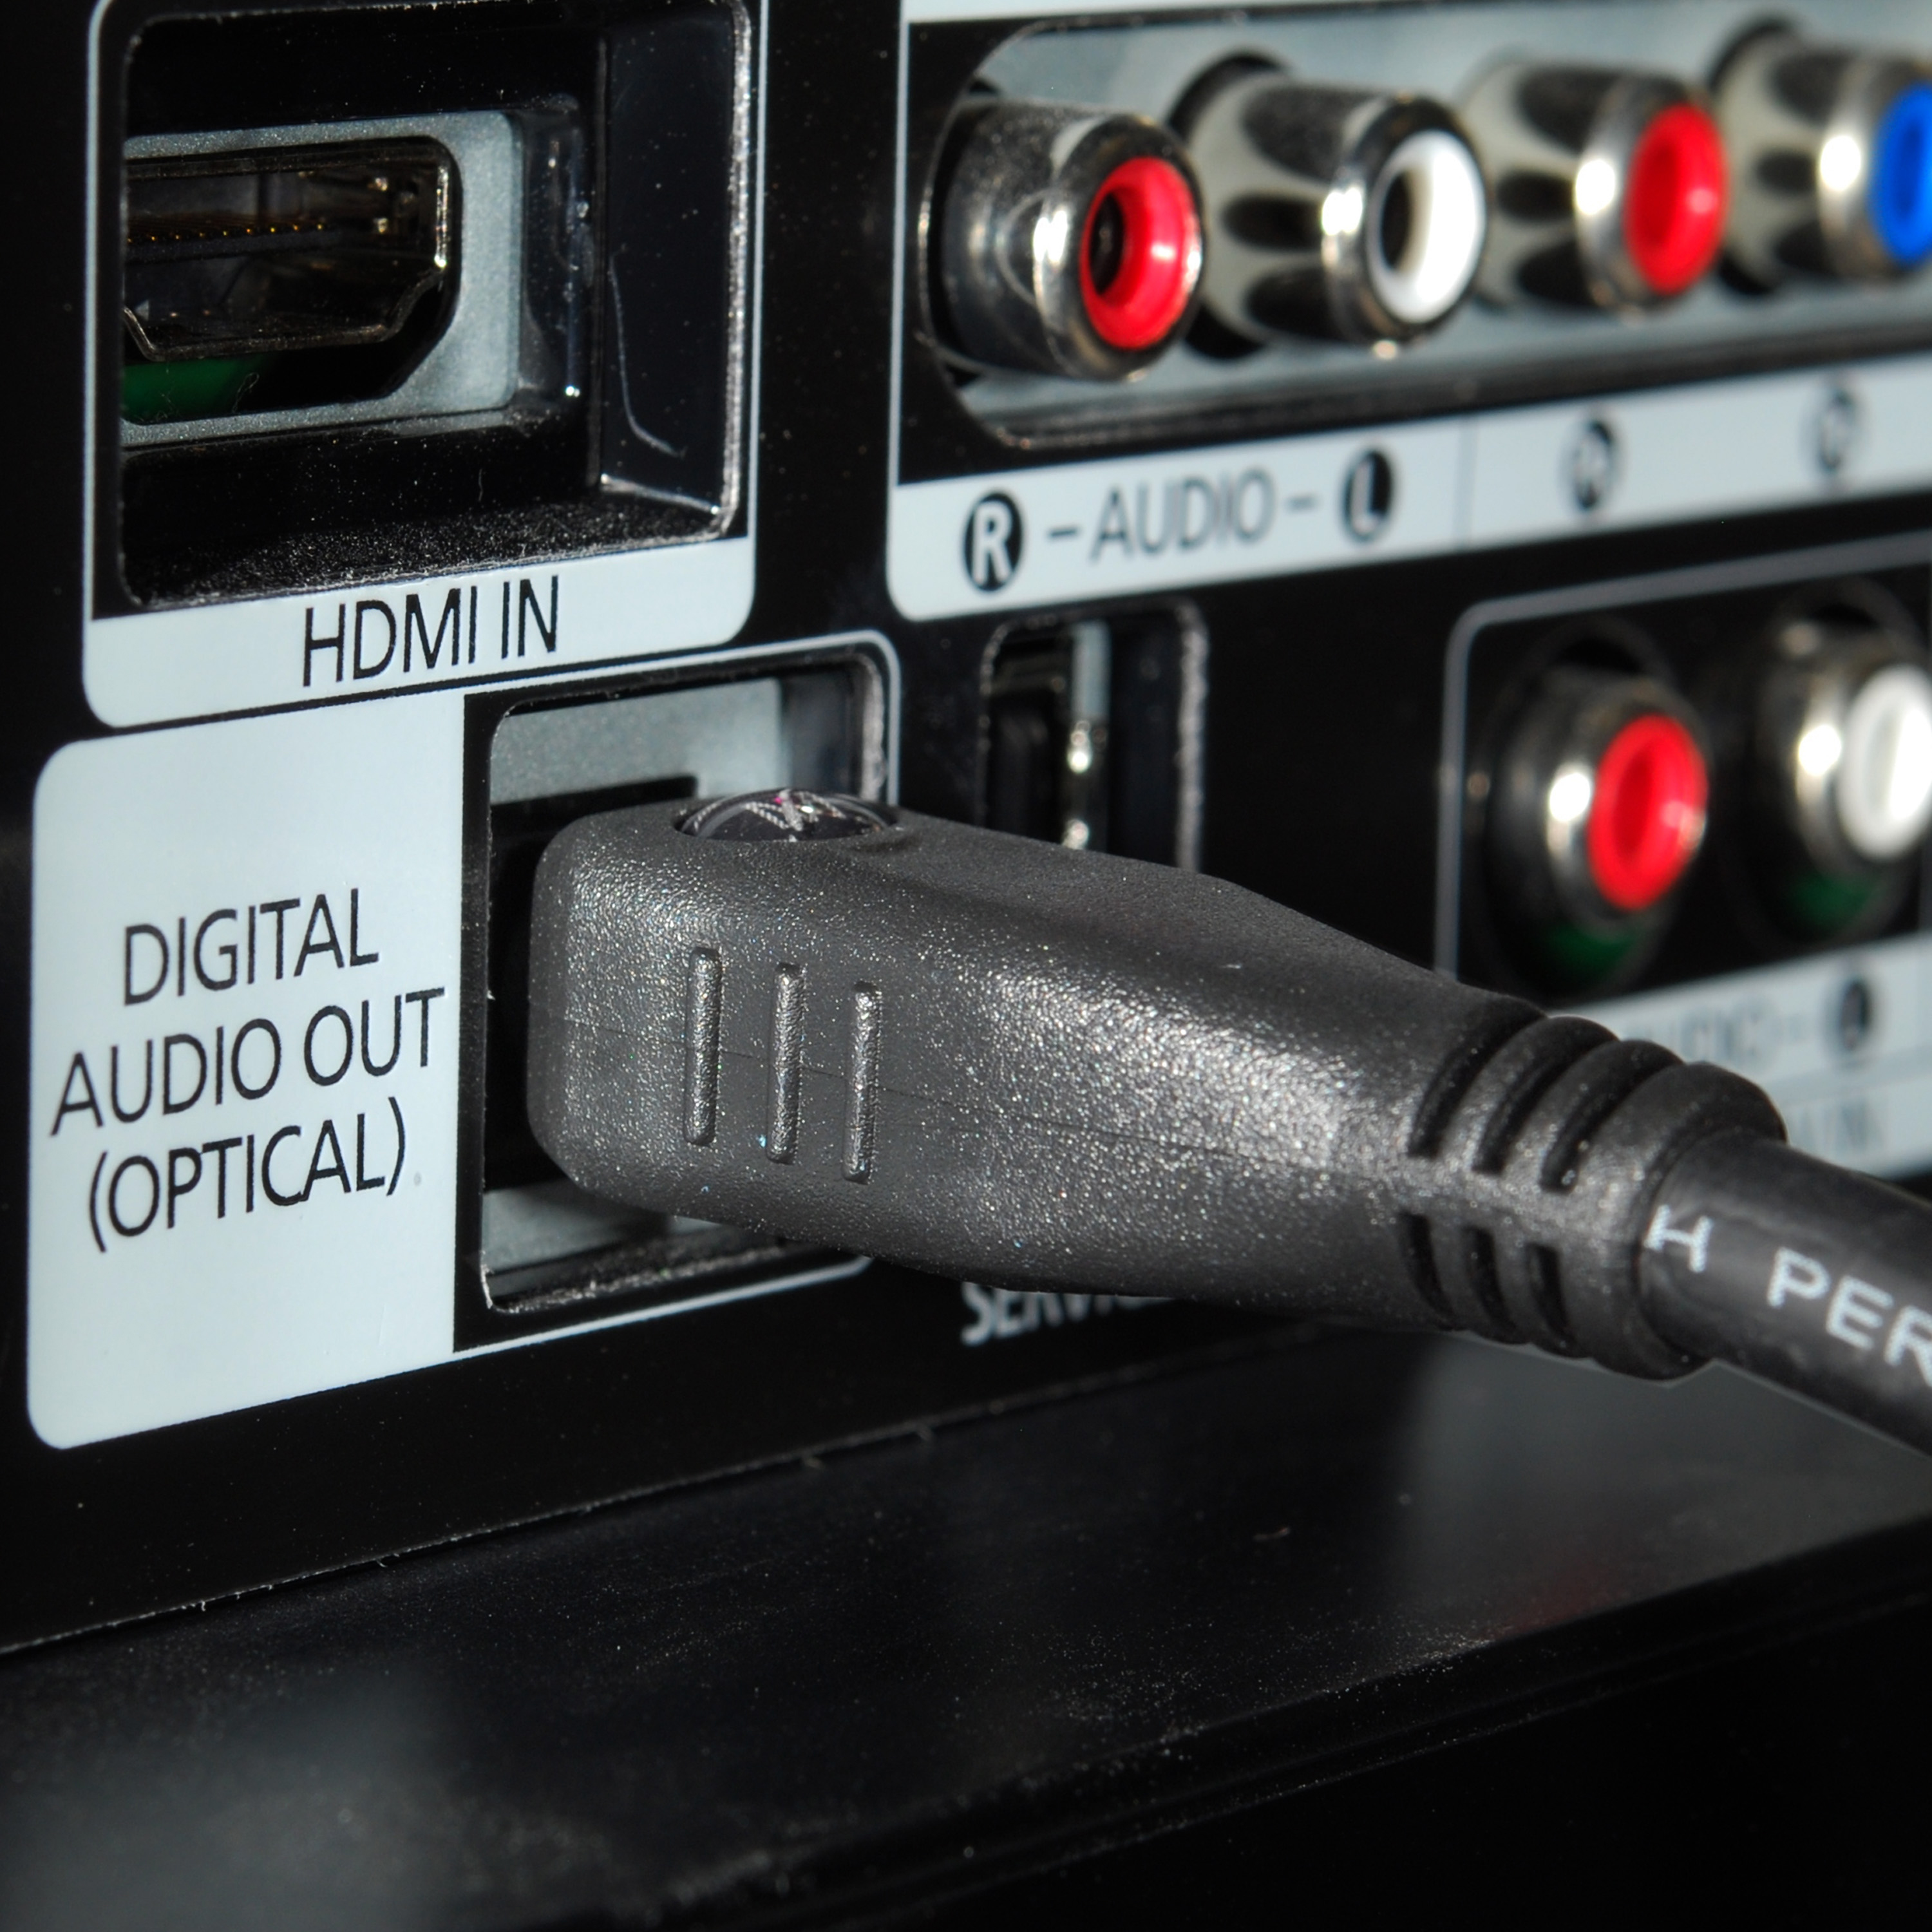 Разъемы для подключения телевизора. Провод Optical Digital Audio. Optical Digital Audio out кабель 5.1. Провод Digital Audio out Optical. Провод оптикал диджитал аудио.